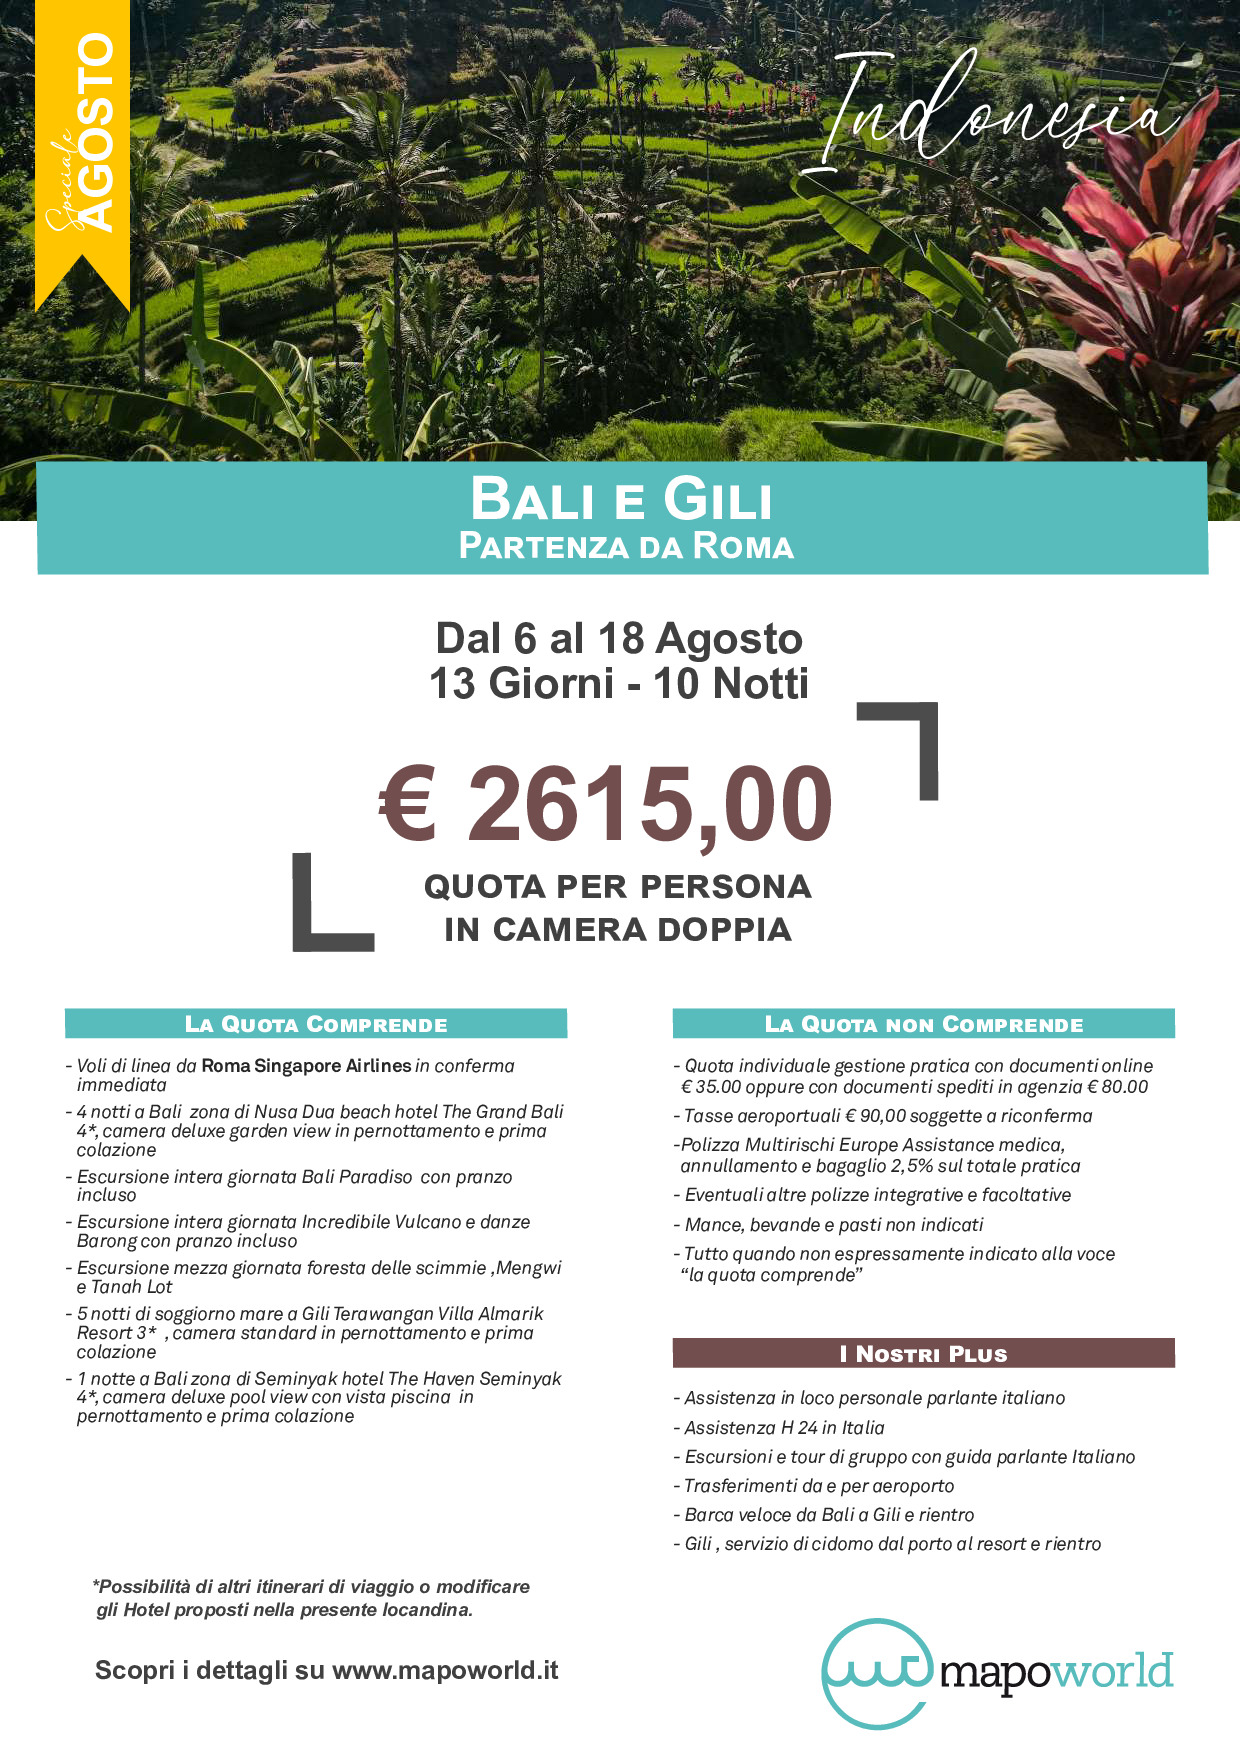 Tour Bali e Gili - Partenza da Roma - 6 Agosto